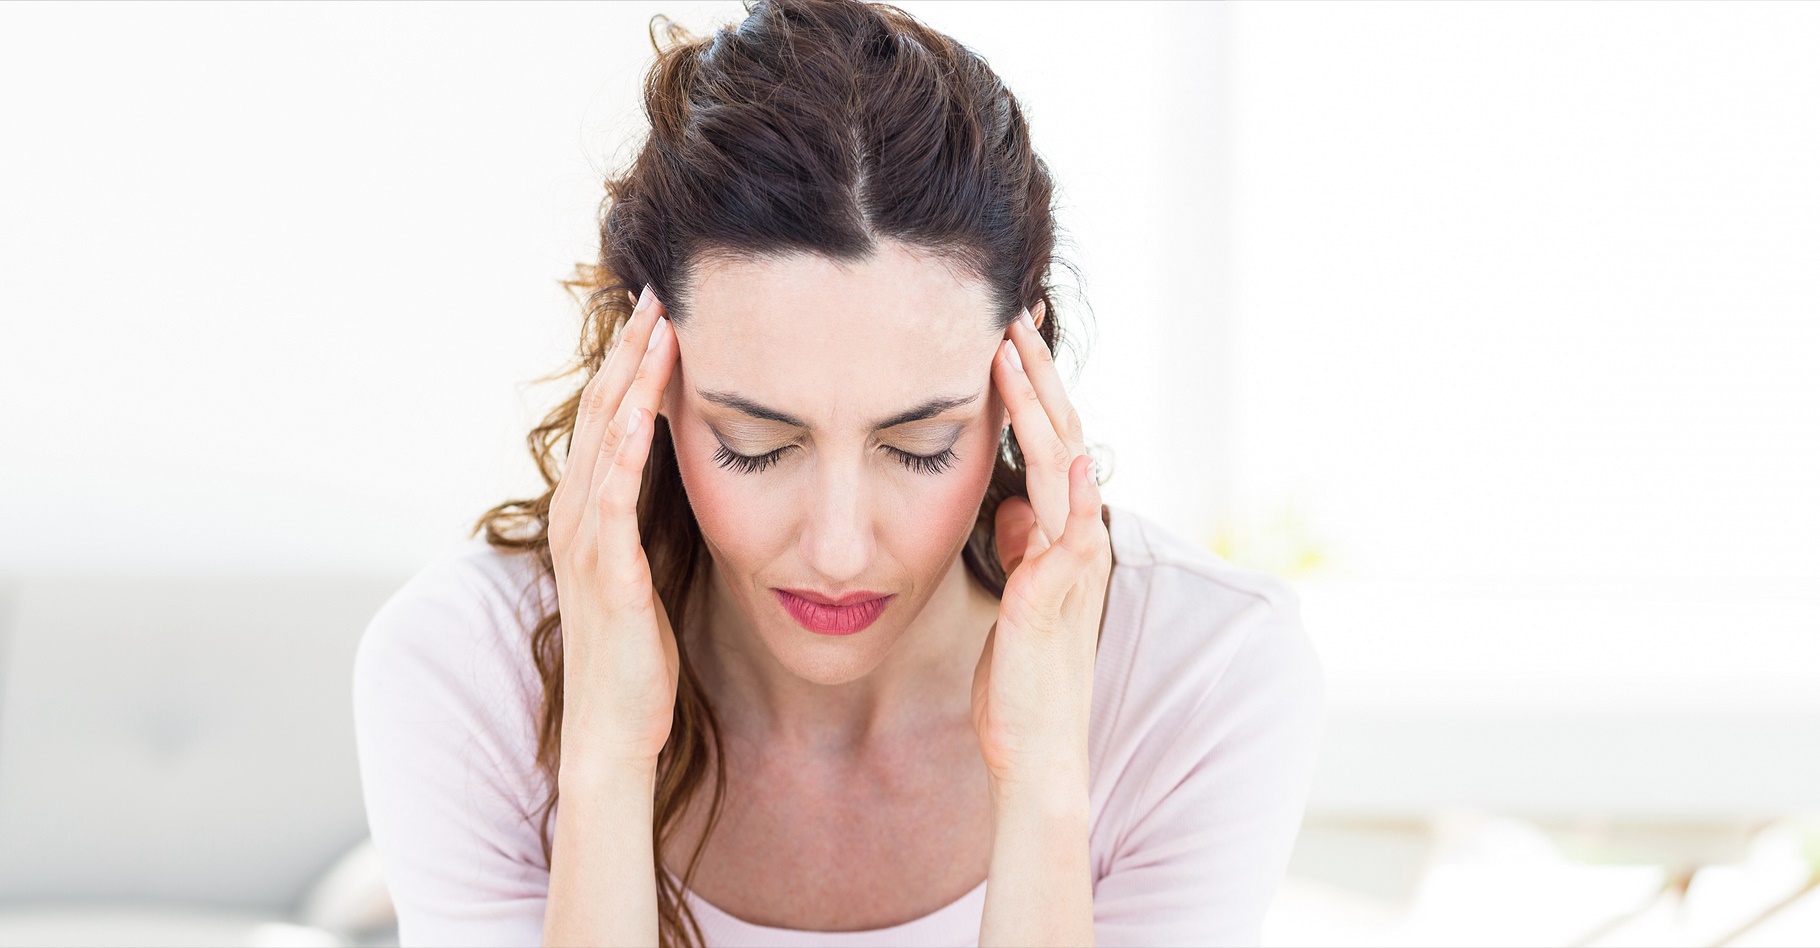 Les personnes migraineuses savent souvent quels aliments peuvent provoquer des maux de tête. © Atomazul, Shutterstock